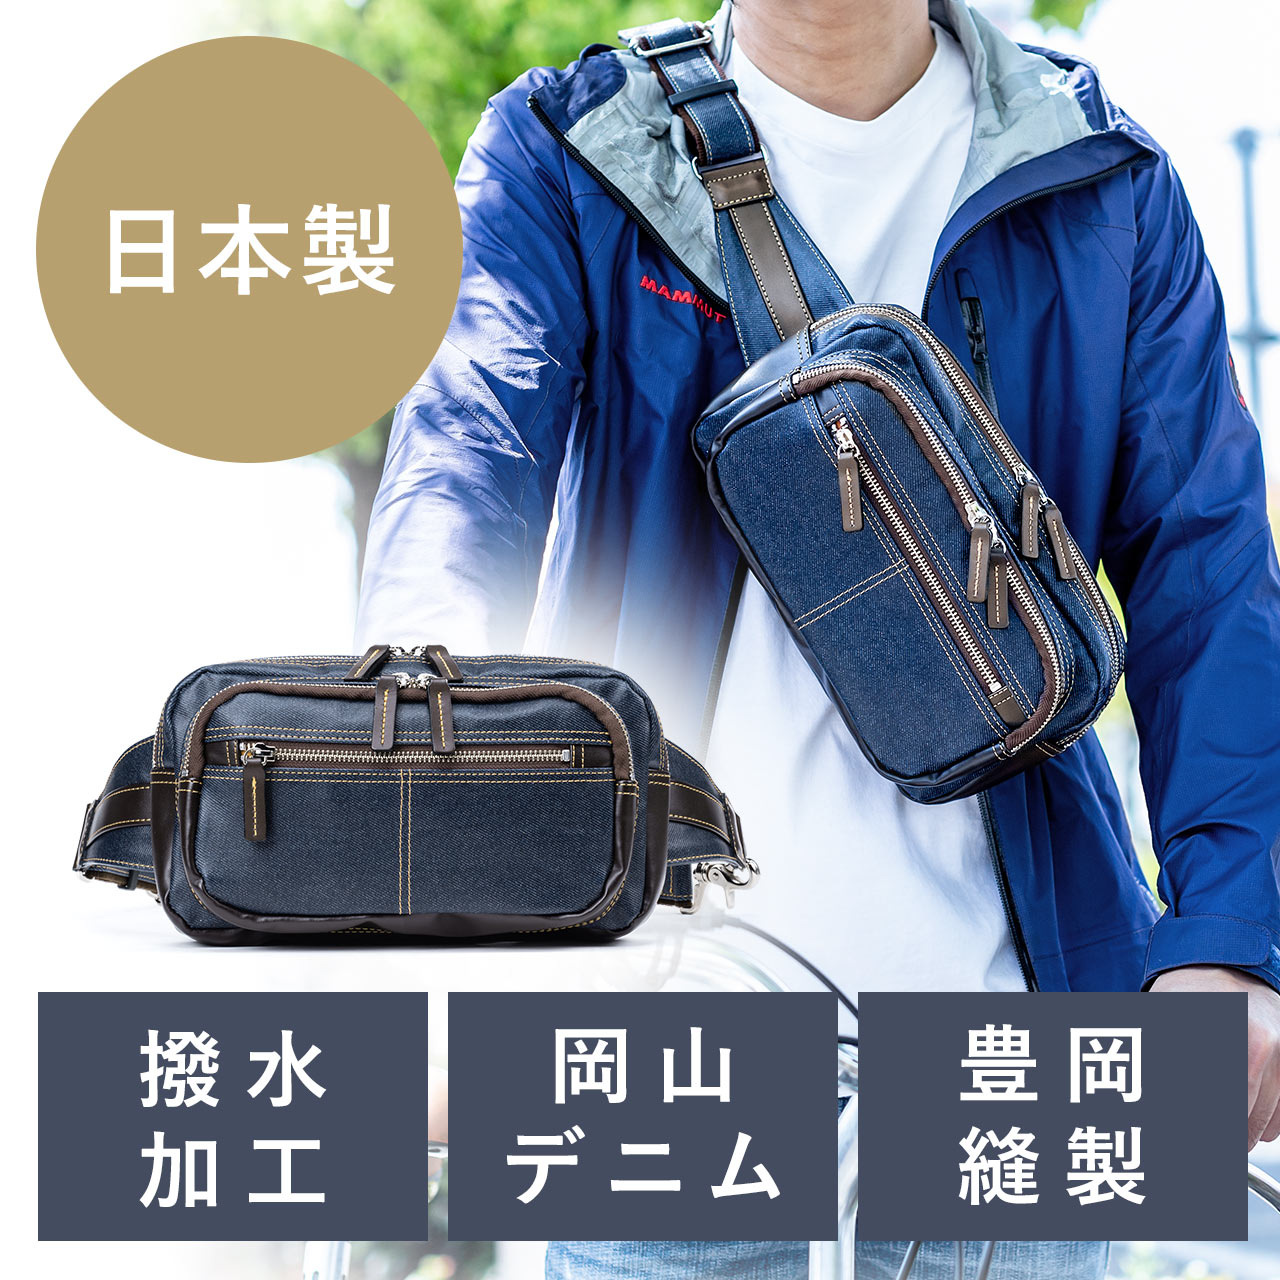 ボディバッグ メンズ ワンショルダー 日本製 デニム生地 横型 ネイビー 0 Bagbdy2nvの販売商品 通販ならサンワダイレクト